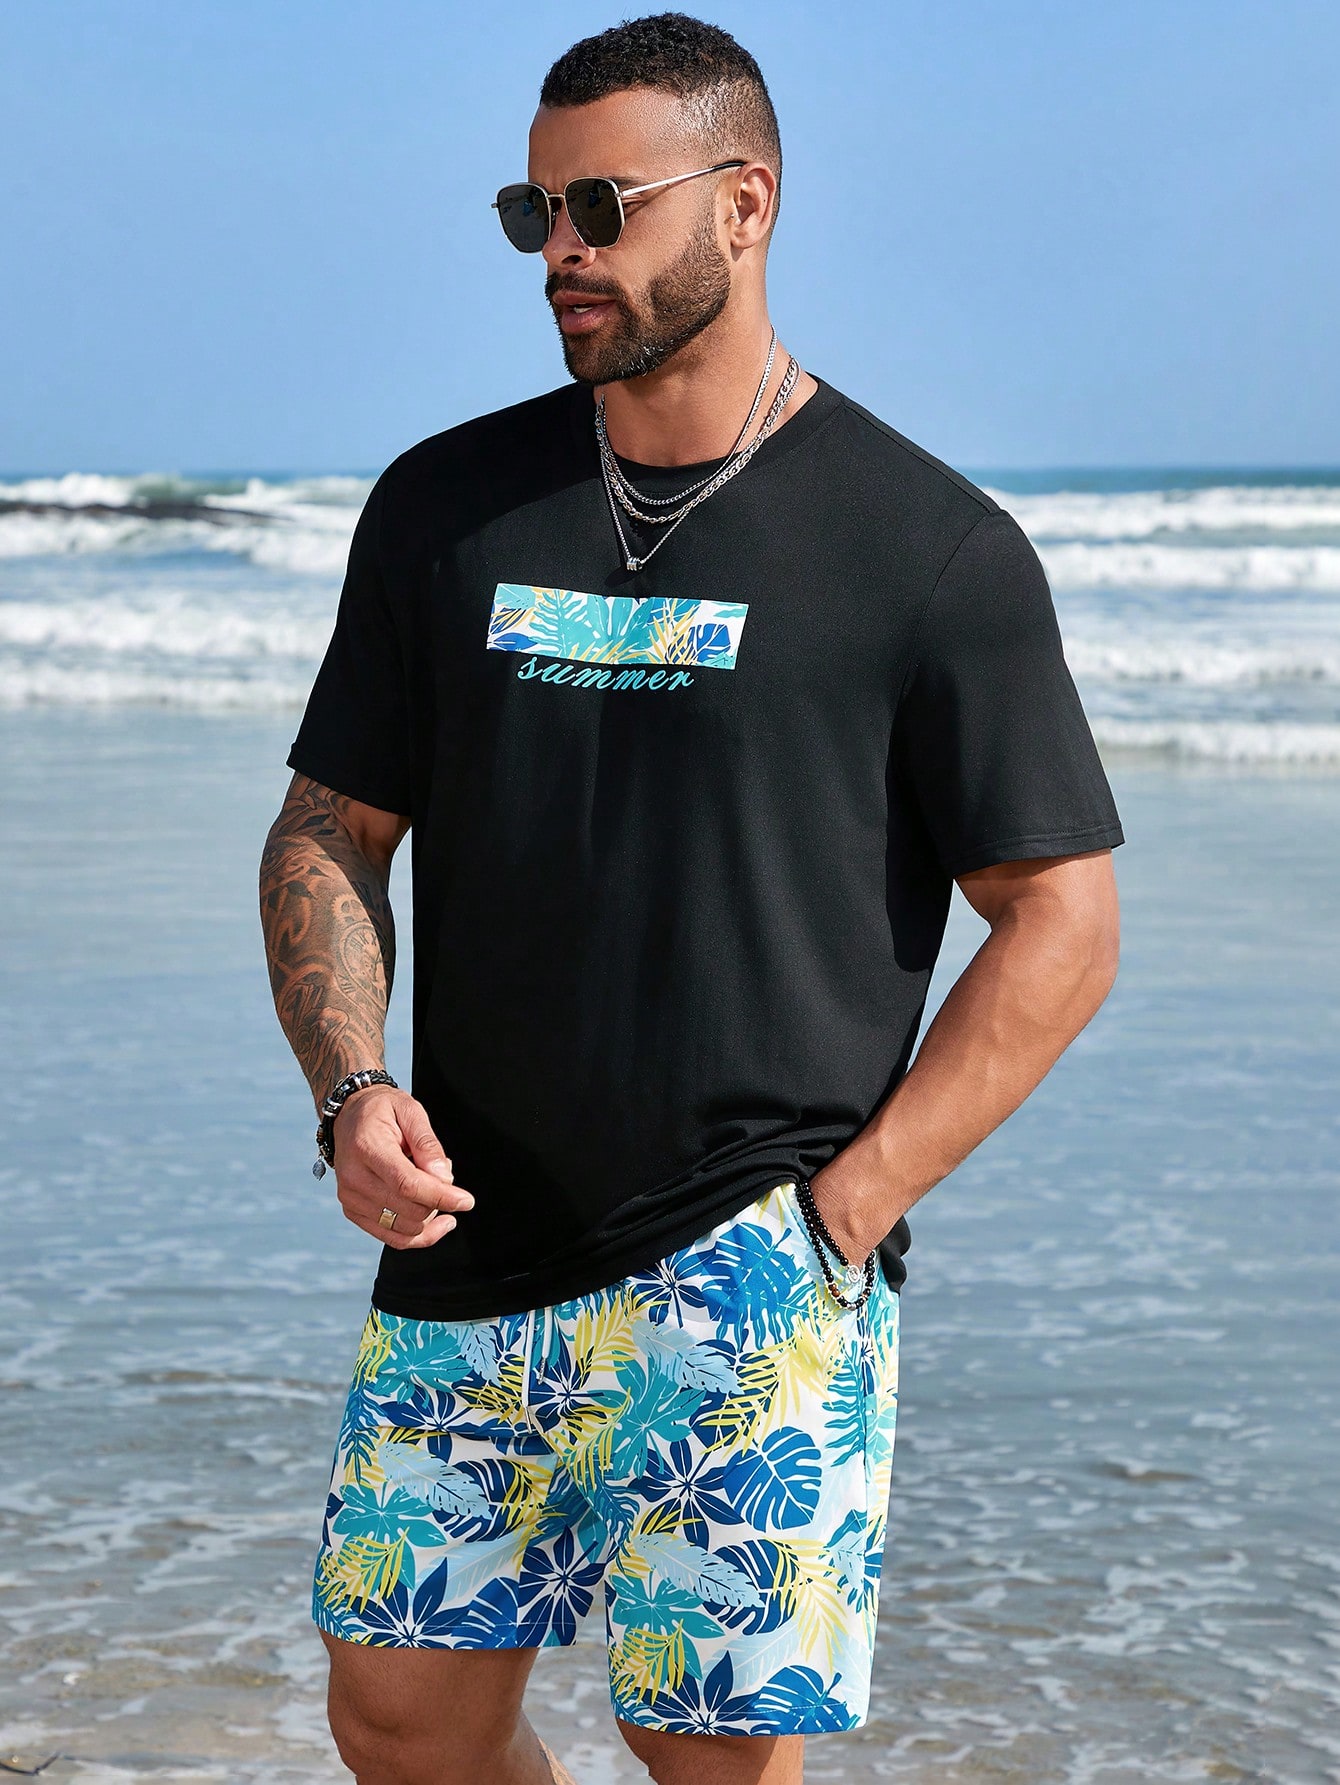 Мужской комплект футболок с короткими рукавами и короткими рукавами Manfinity RSRT больших размеров с растительным принтом, многоцветный комплект мужских футболок с принтом